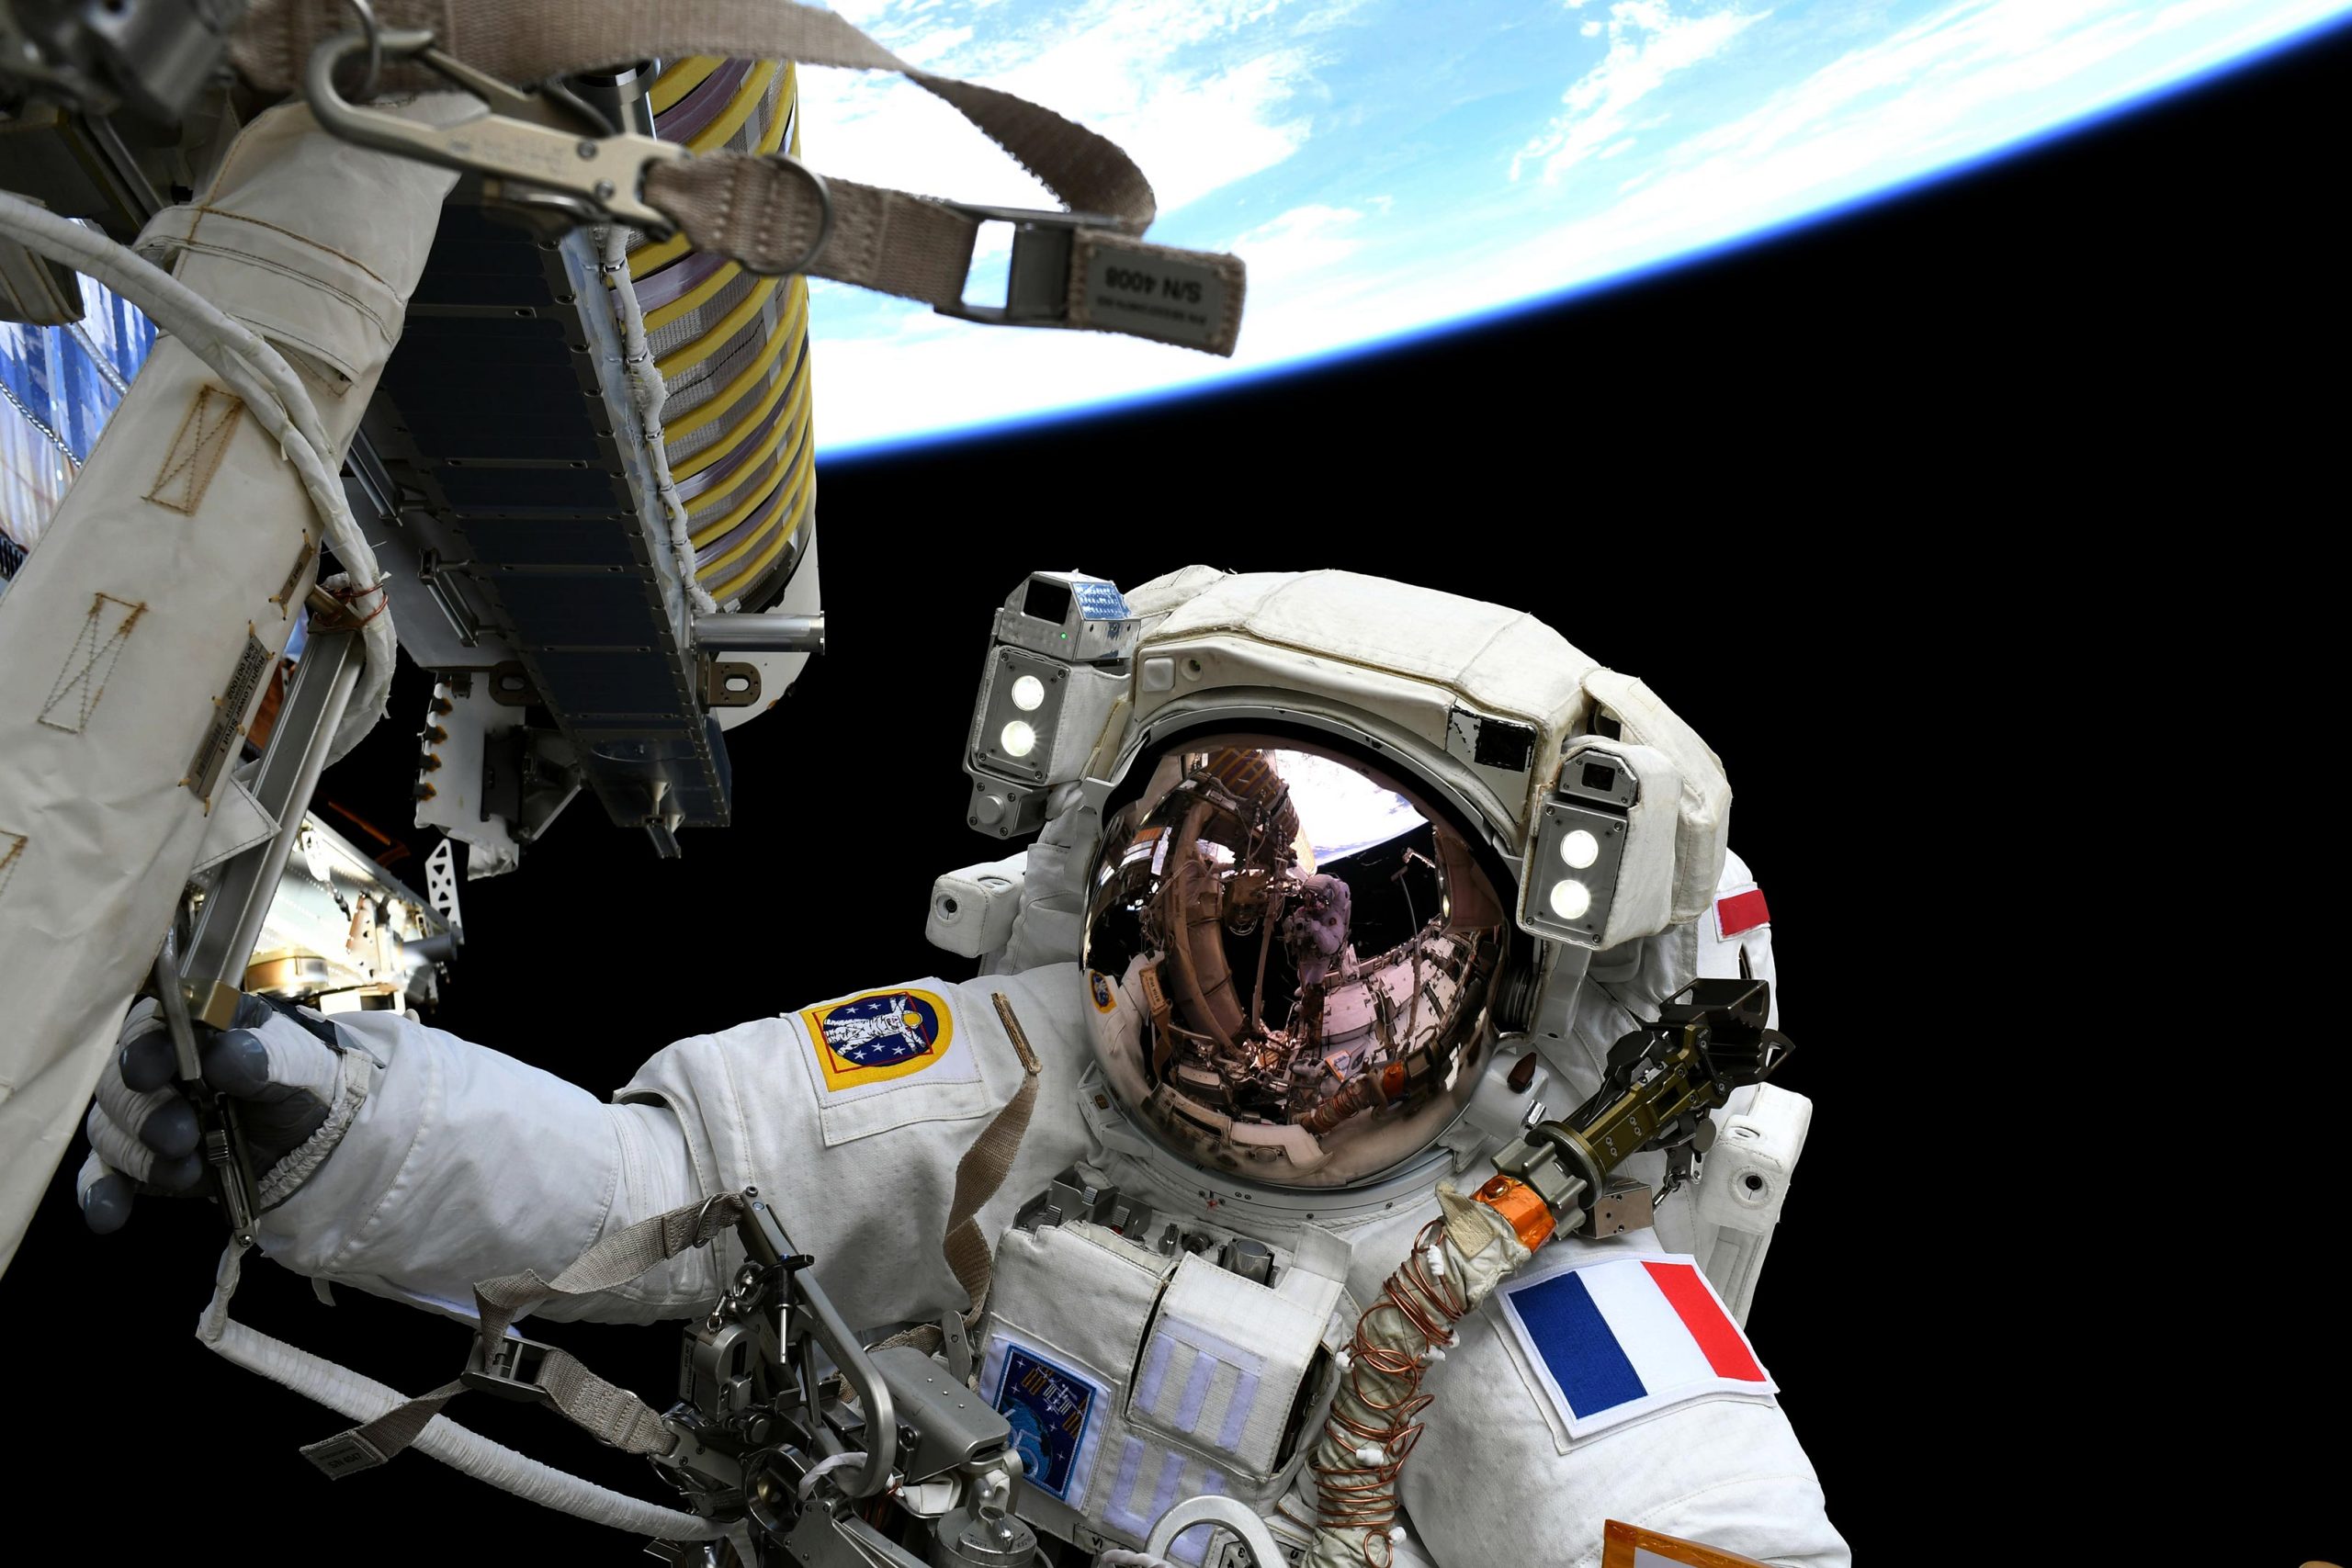 El astronauta de la NASA continúa la misión récord mientras continúan los preparativos de la caminata espacial